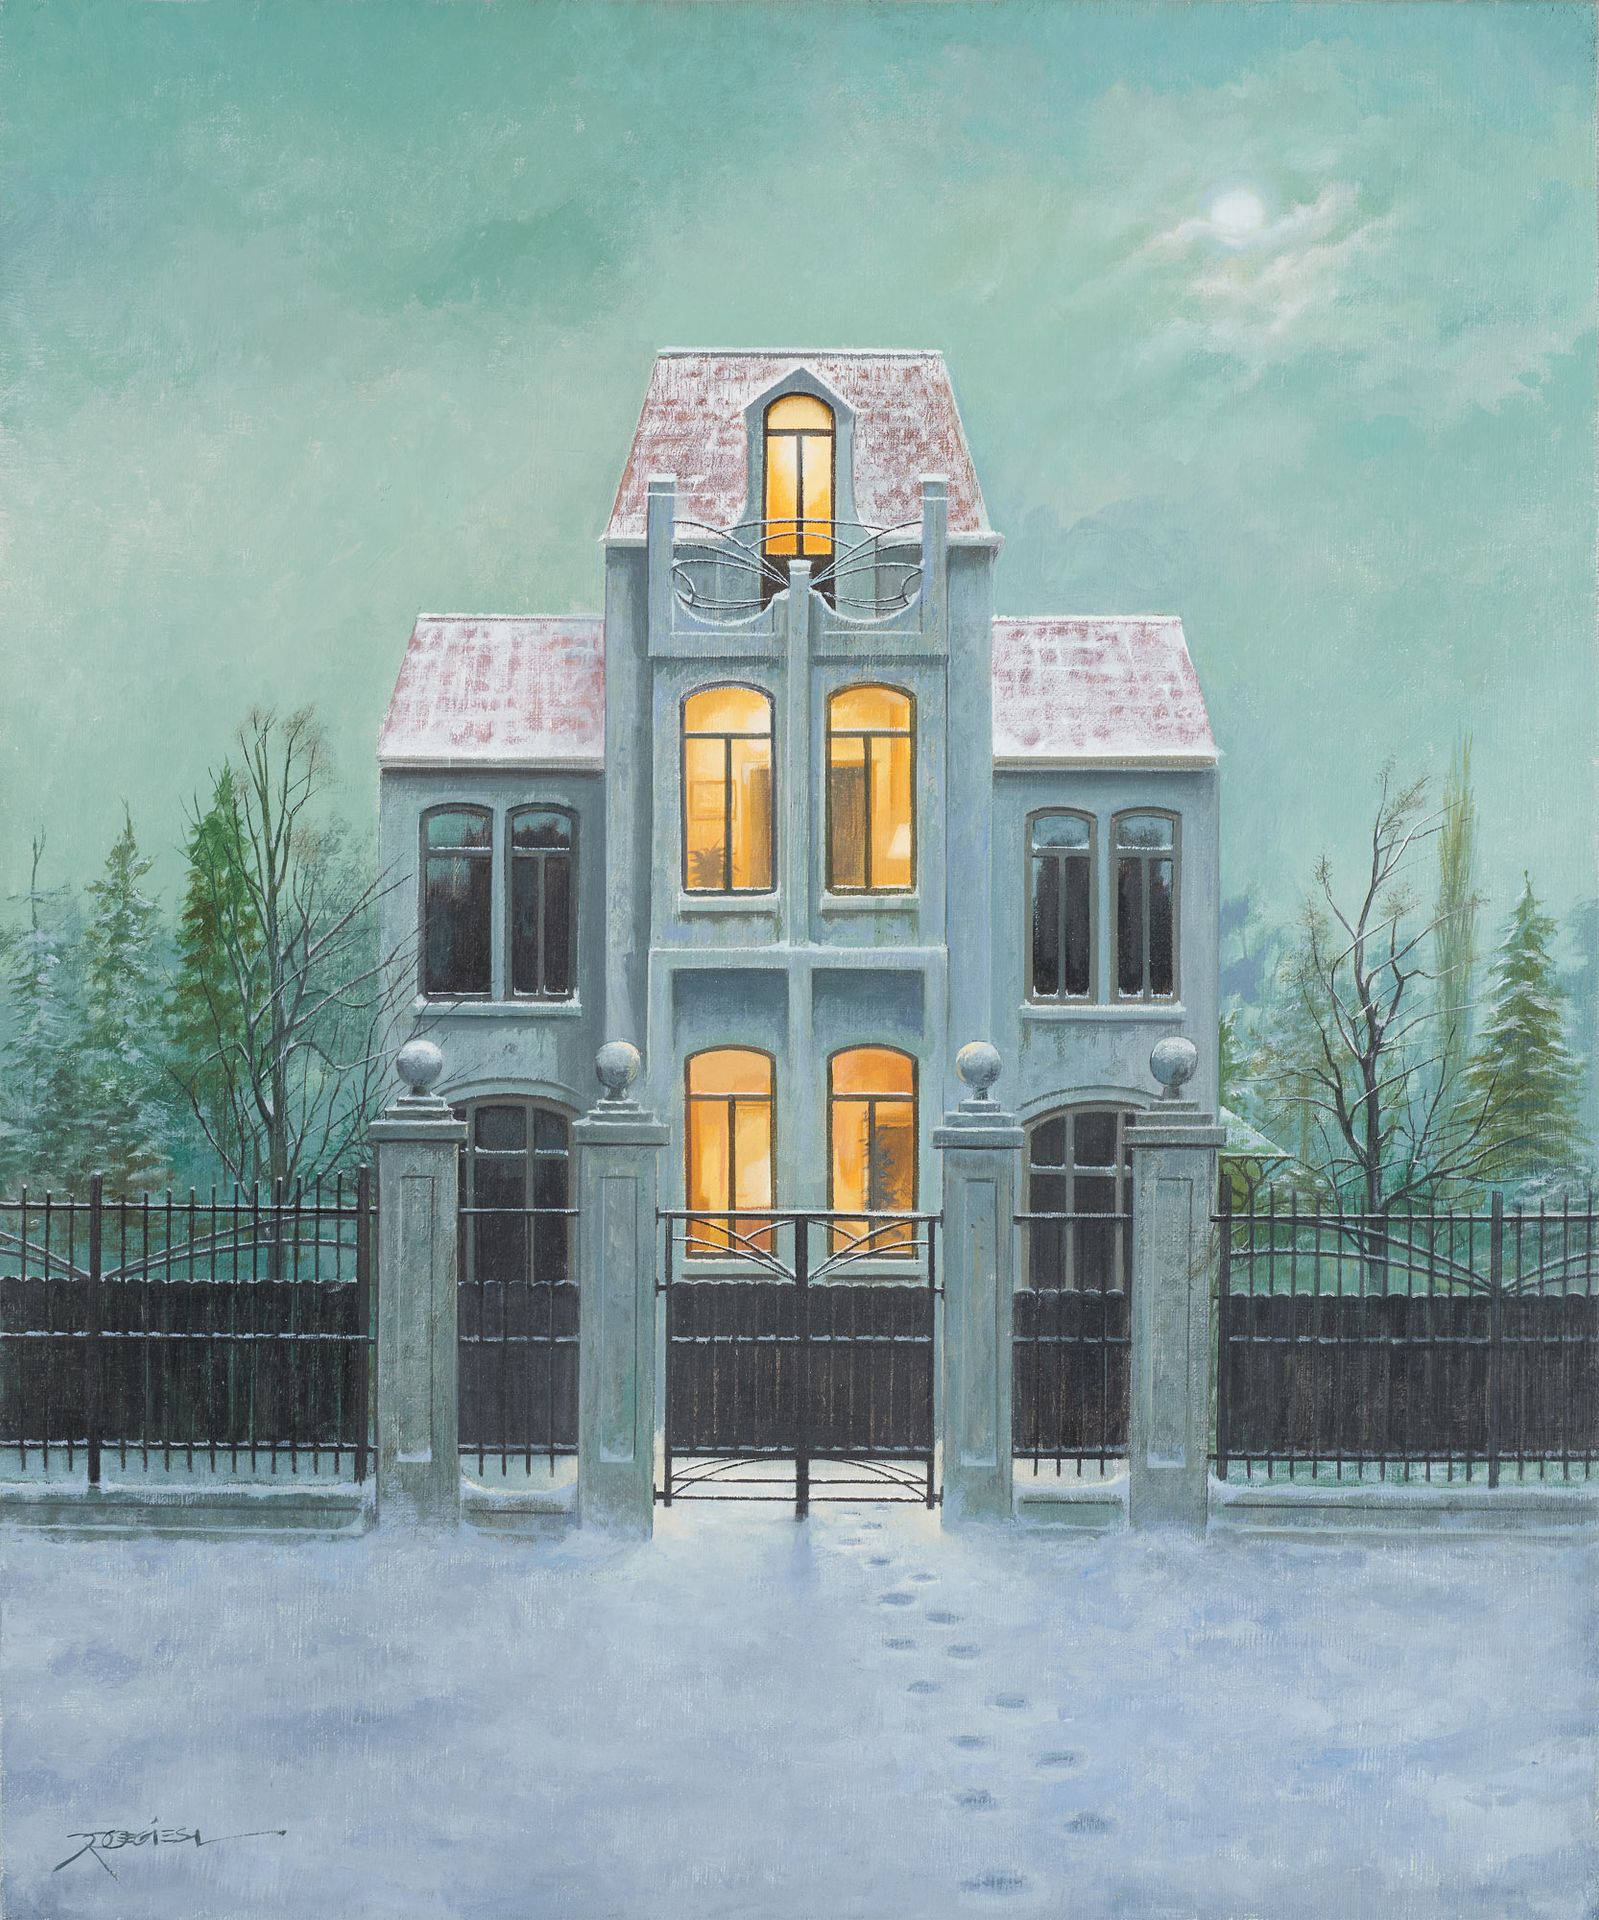 Désiré ROEGIEST École belge (1939). 
Óleo sobre lienzo: "Pasos en la nieve".



&hellip;